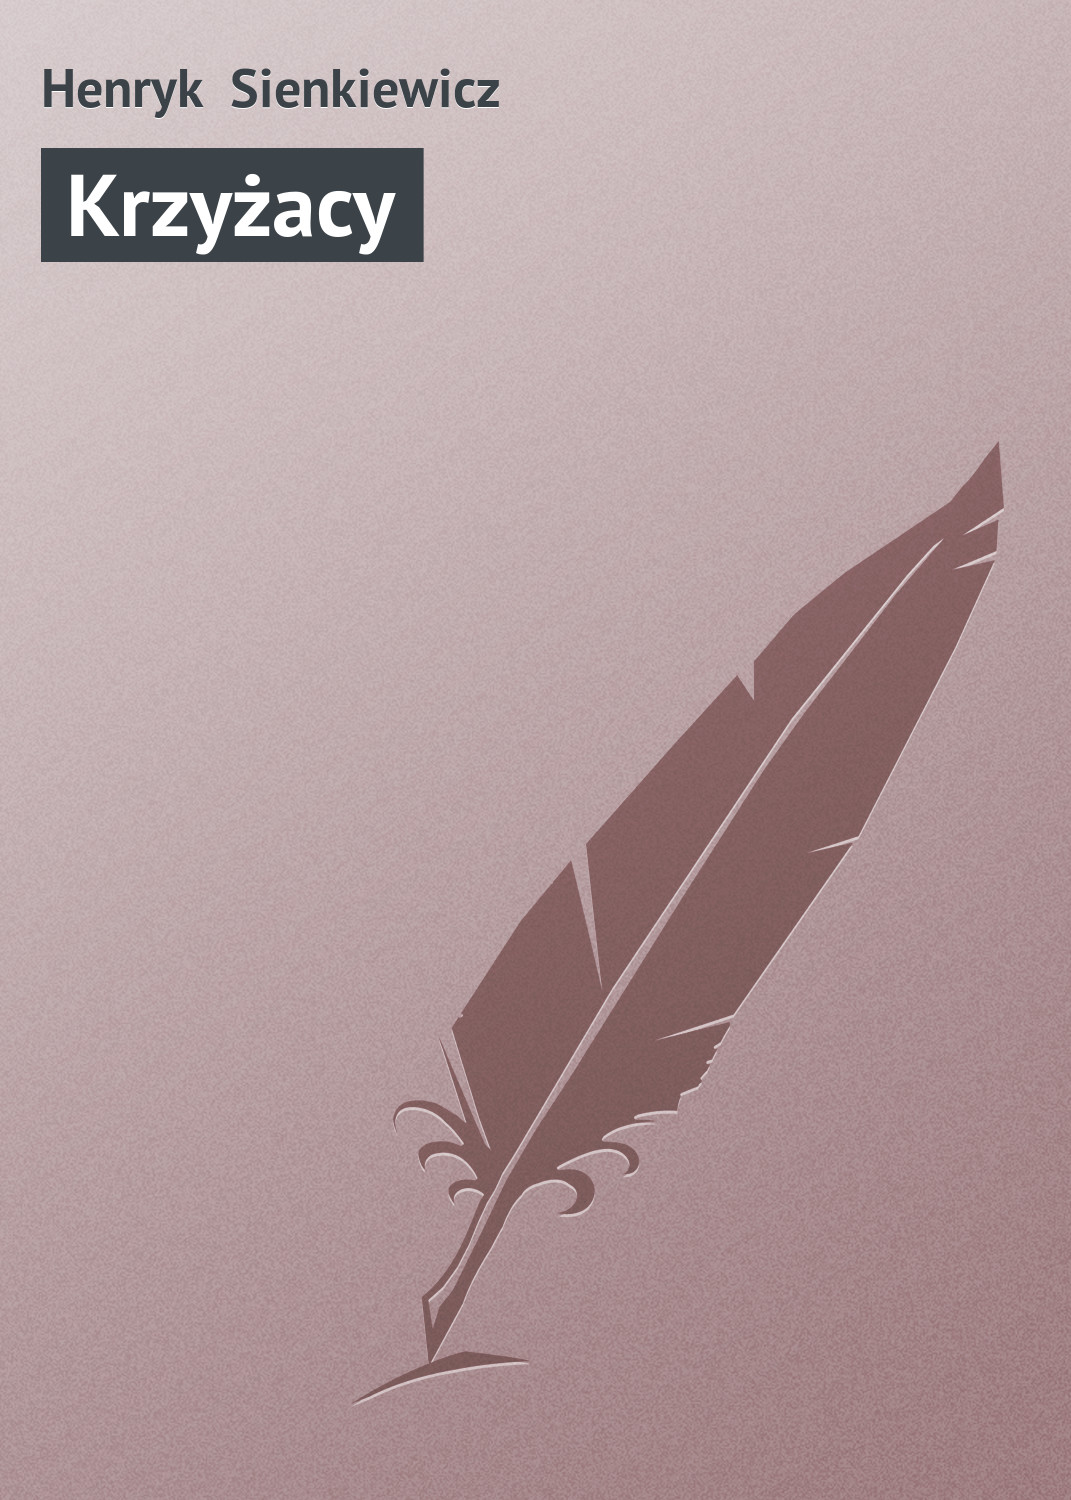 Книга Krzyżacy из серии , созданная Henryk Sienkiewicz, может относится к жанру Зарубежная старинная литература, Зарубежная классика. Стоимость электронной книги Krzyżacy с идентификатором 21105758 составляет 5.99 руб.